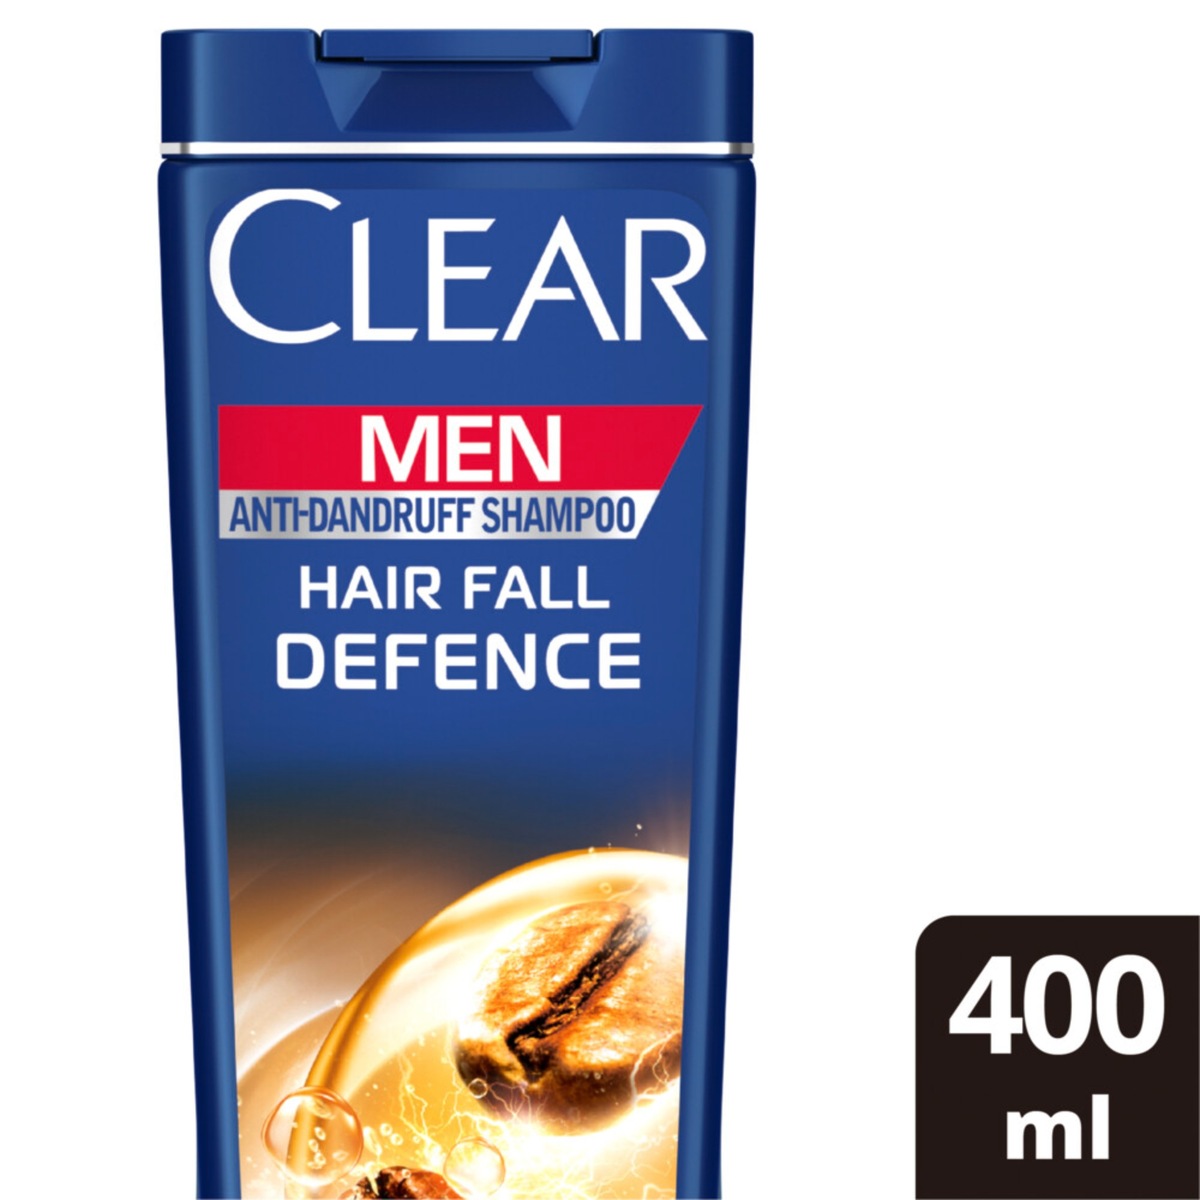 اشتري قم بشراء كلير شامبو ضد القشرة وحماية من تساقط الشعر للرجال 400 مل Online at Best Price من الموقع - من لولو هايبر ماركت Shampoo في السعودية